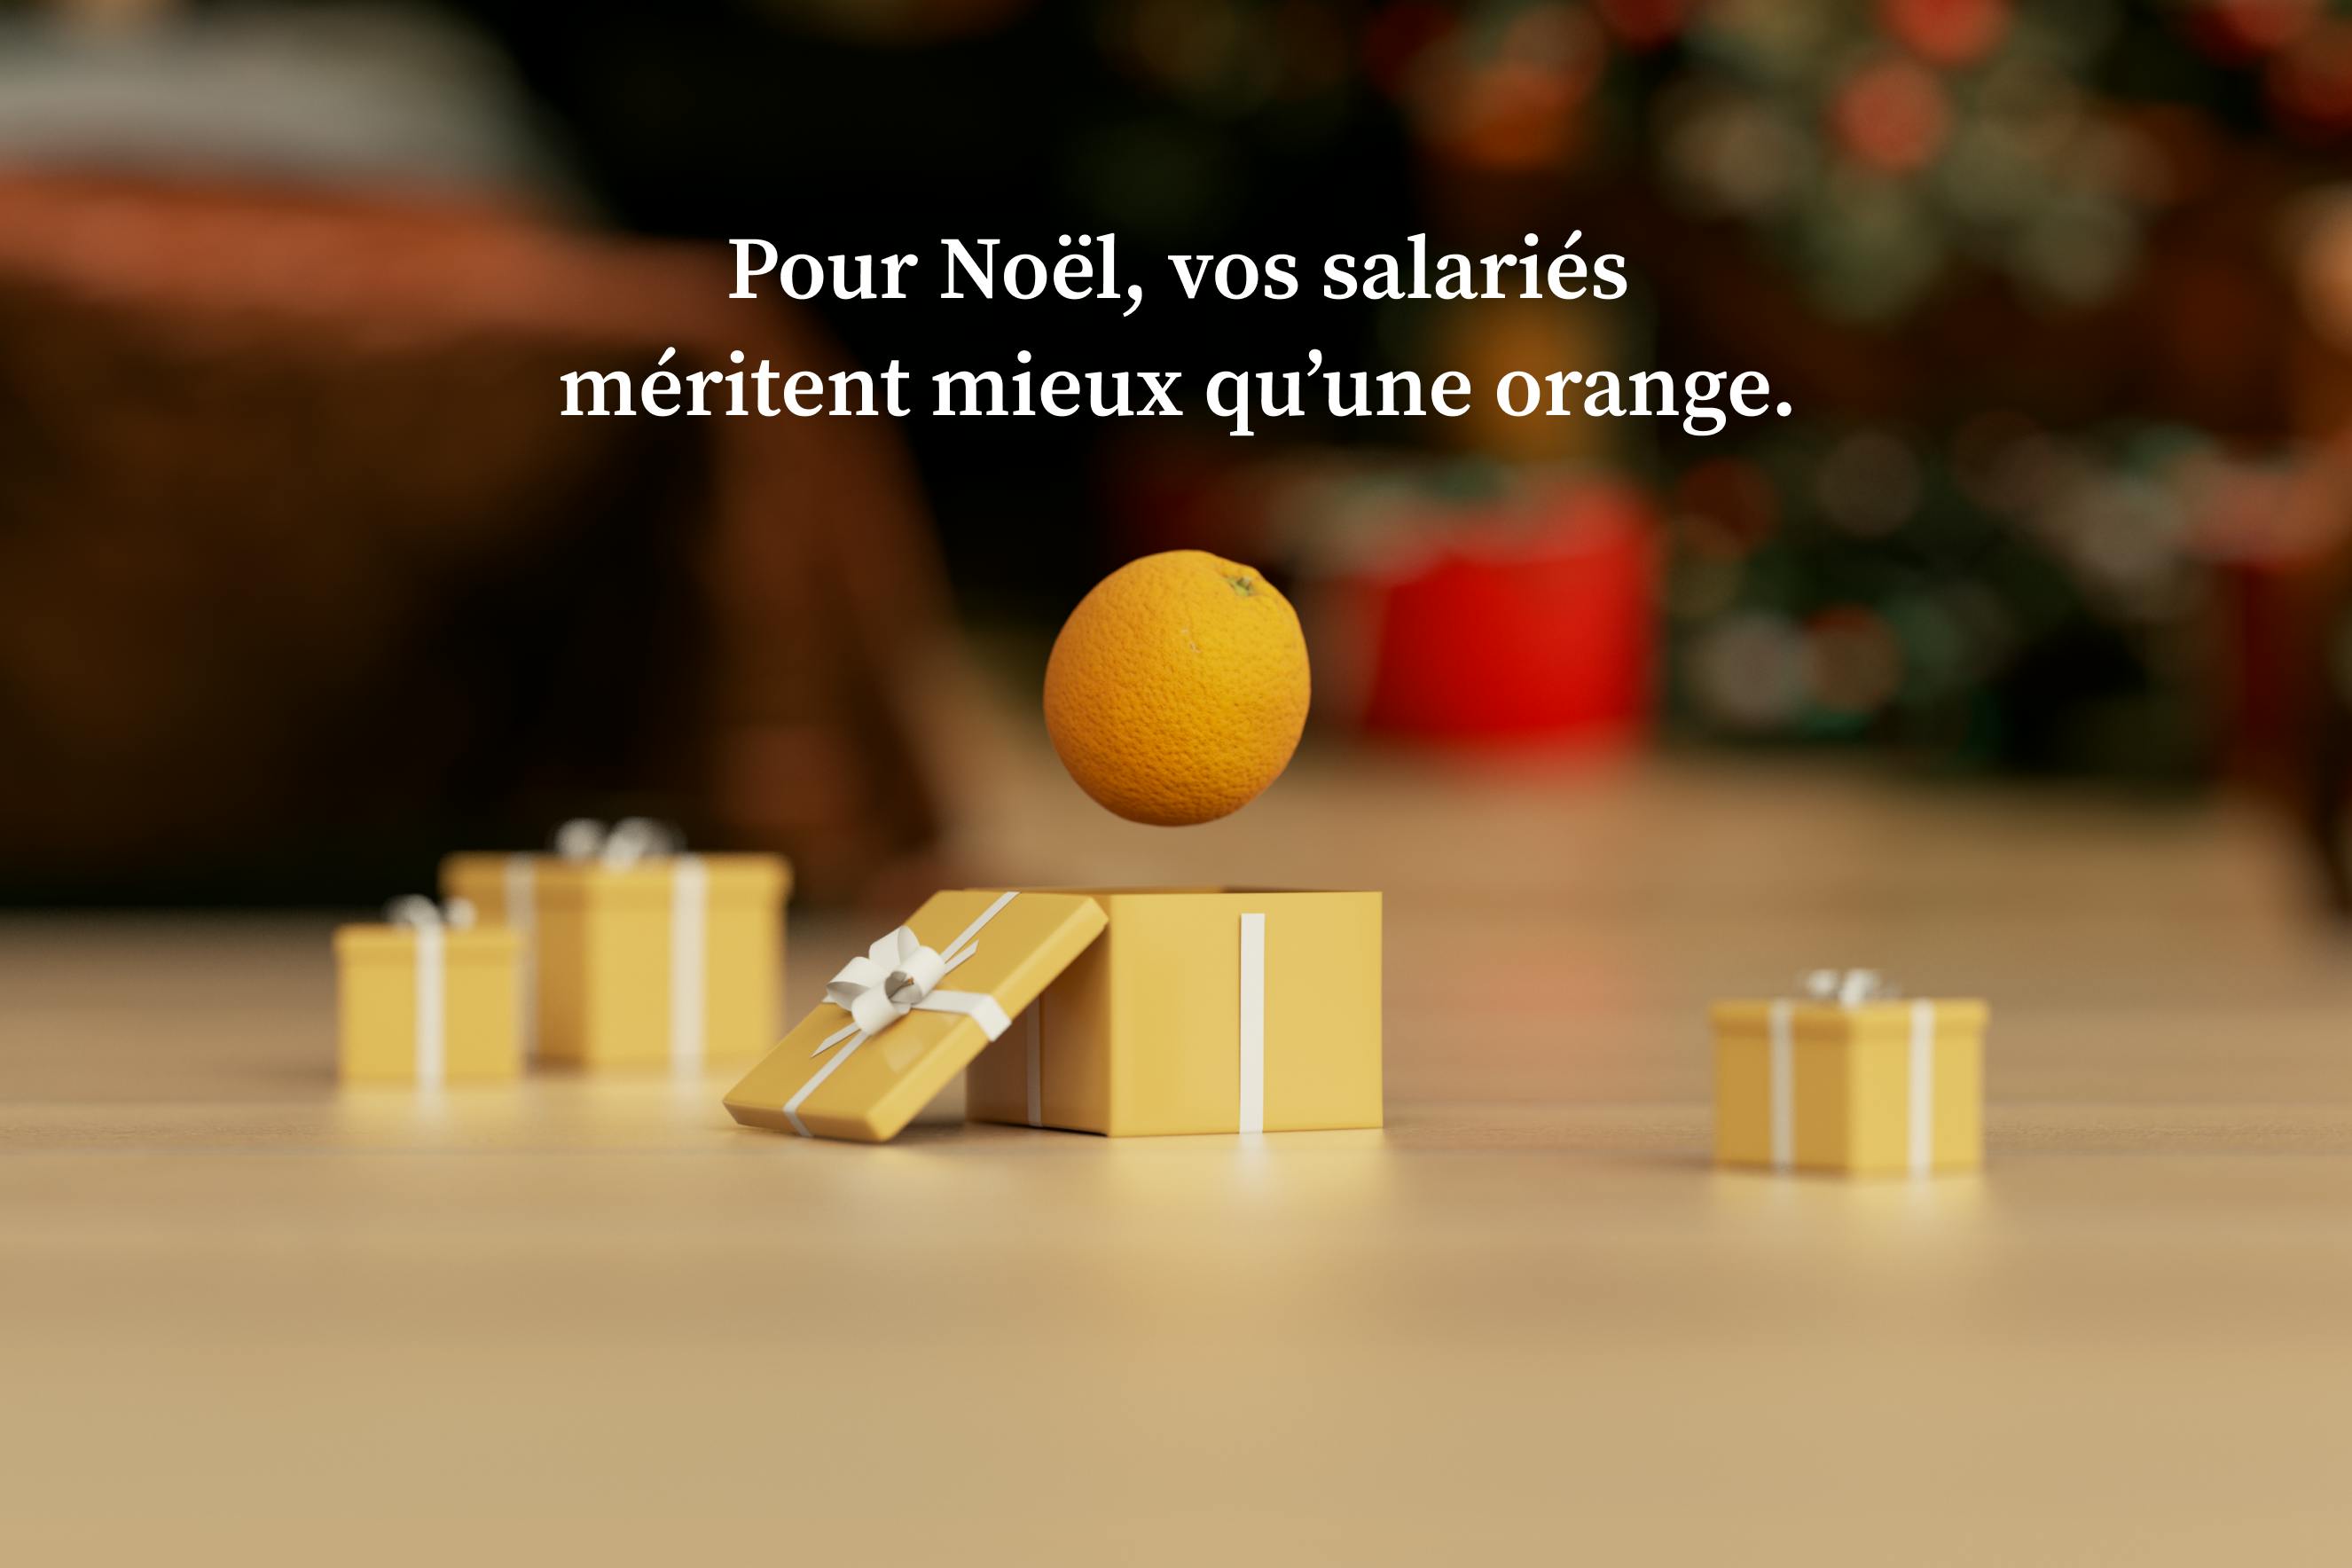 Pour Noël, vos salariés méritent mieux qu'une orange 